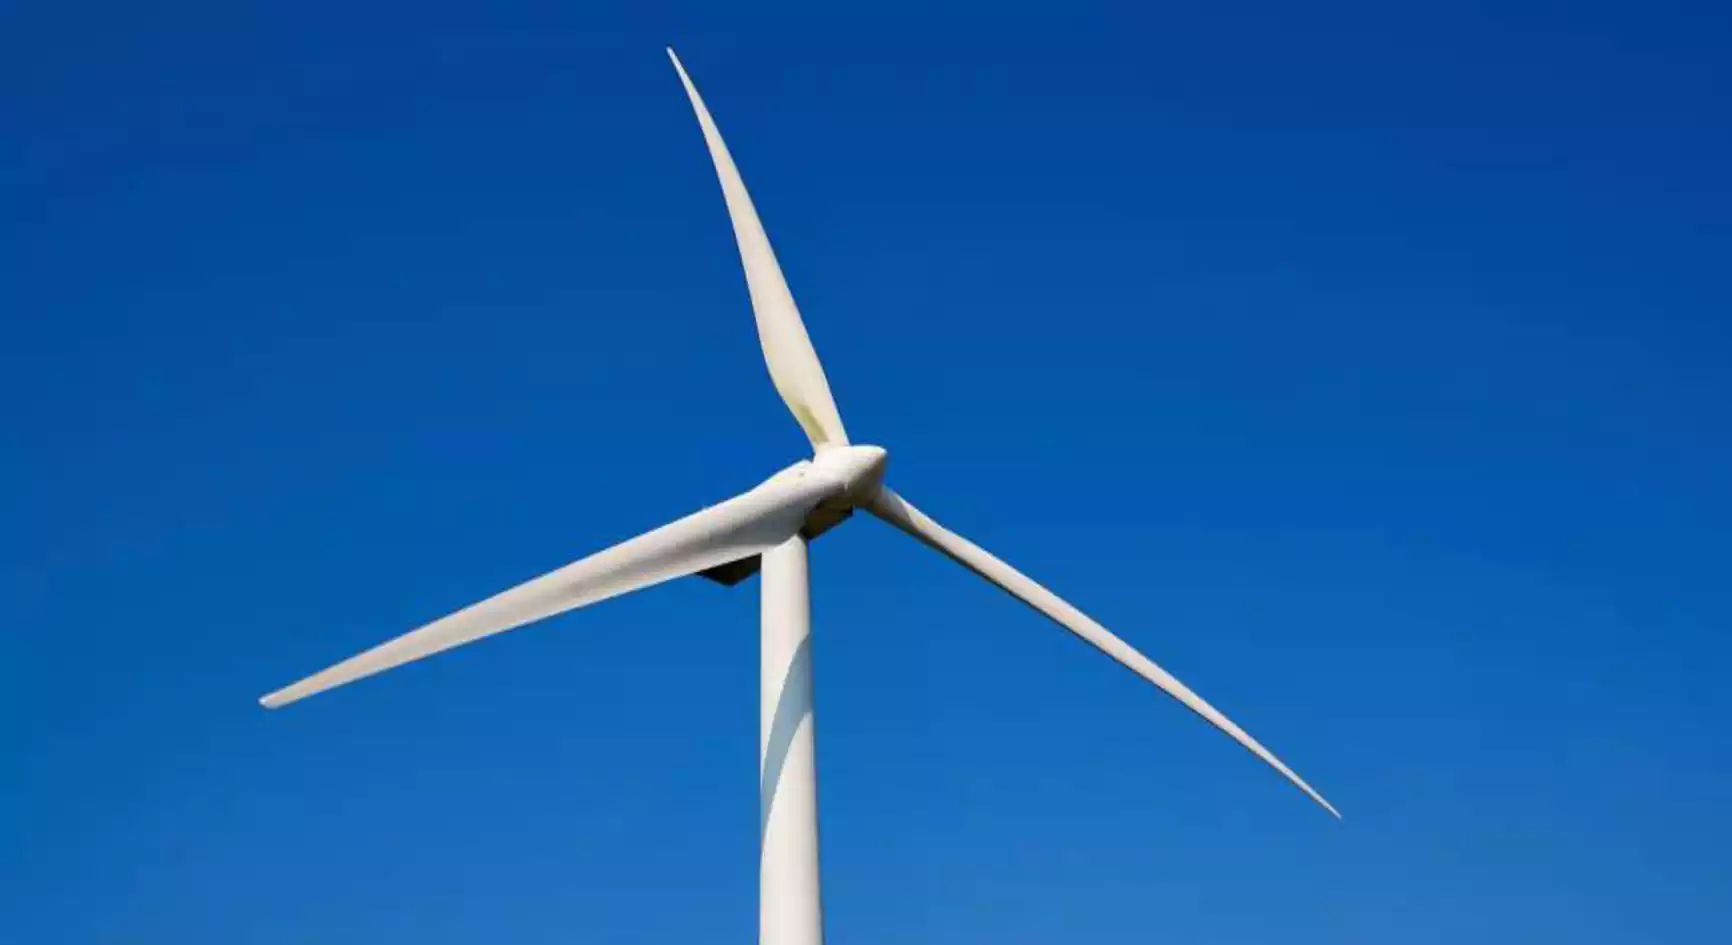 توربین بادی - ماه صنعت انرژی